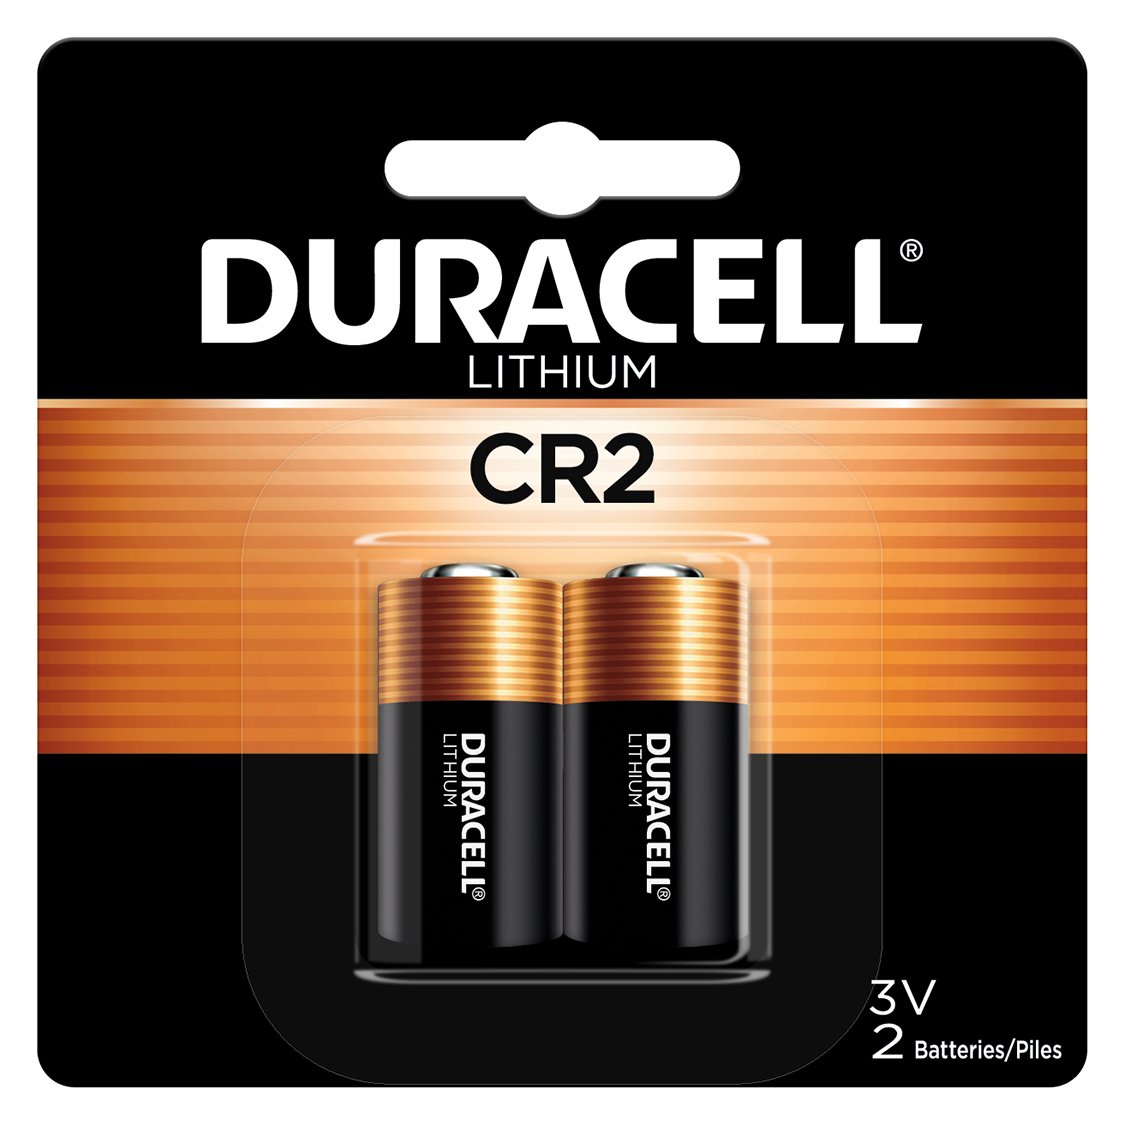 cr2 battery